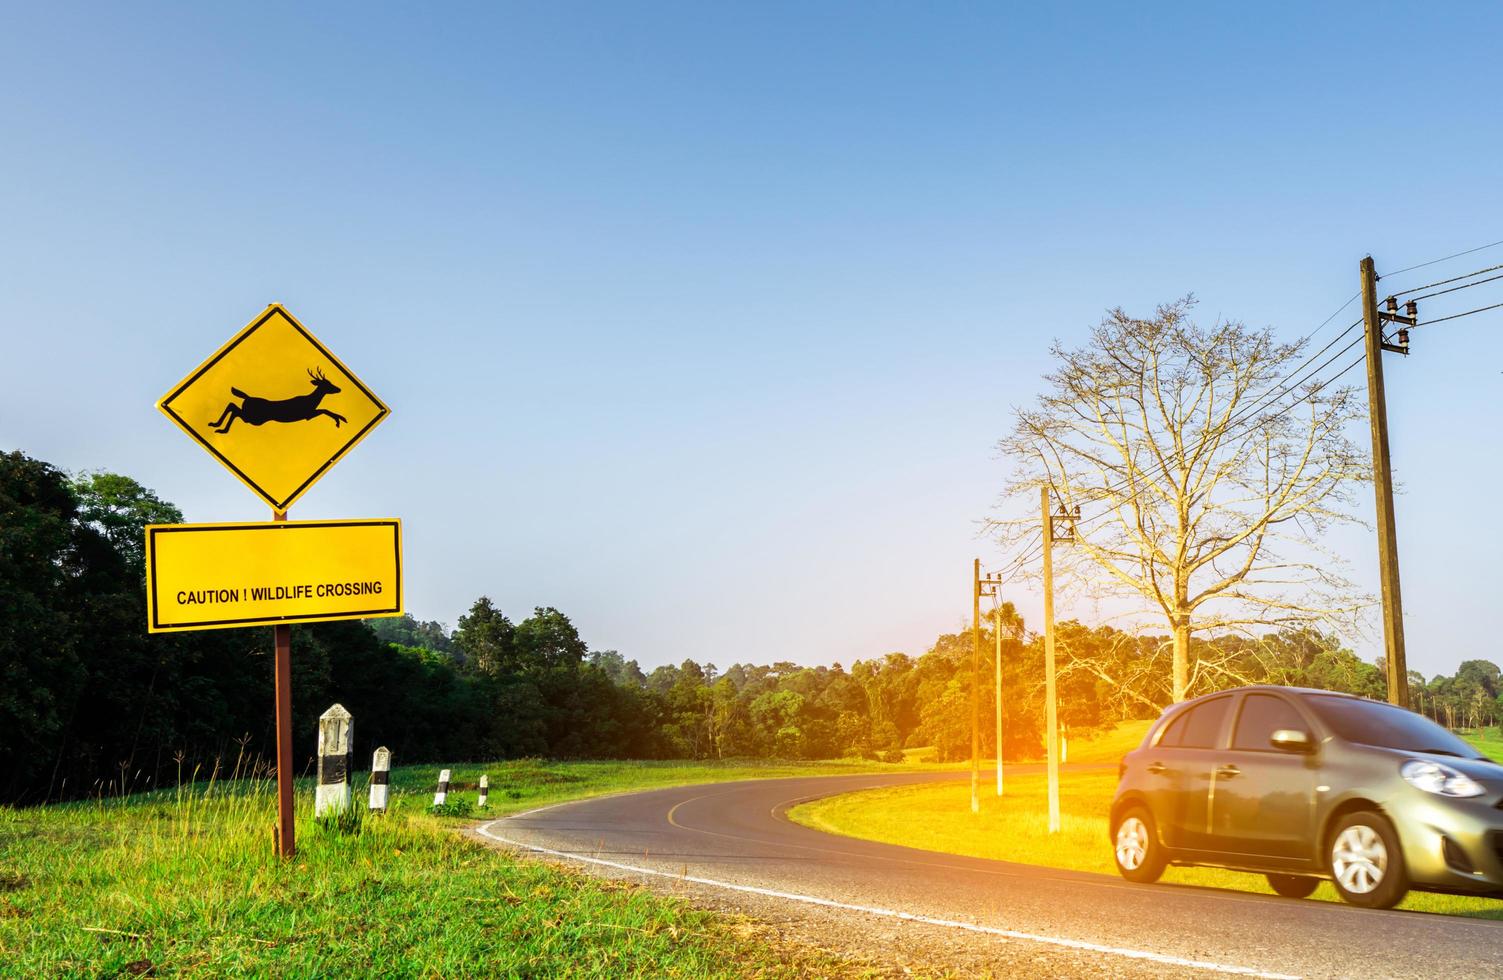 carro ecológico do turista dirigindo com cautela durante a viagem na estrada de asfalto curva perto do sinal de trânsito amarelo com veados pulando dentro do sinal e tem mensagem cautela travessia de vida selvagem. céu azul claro. foto